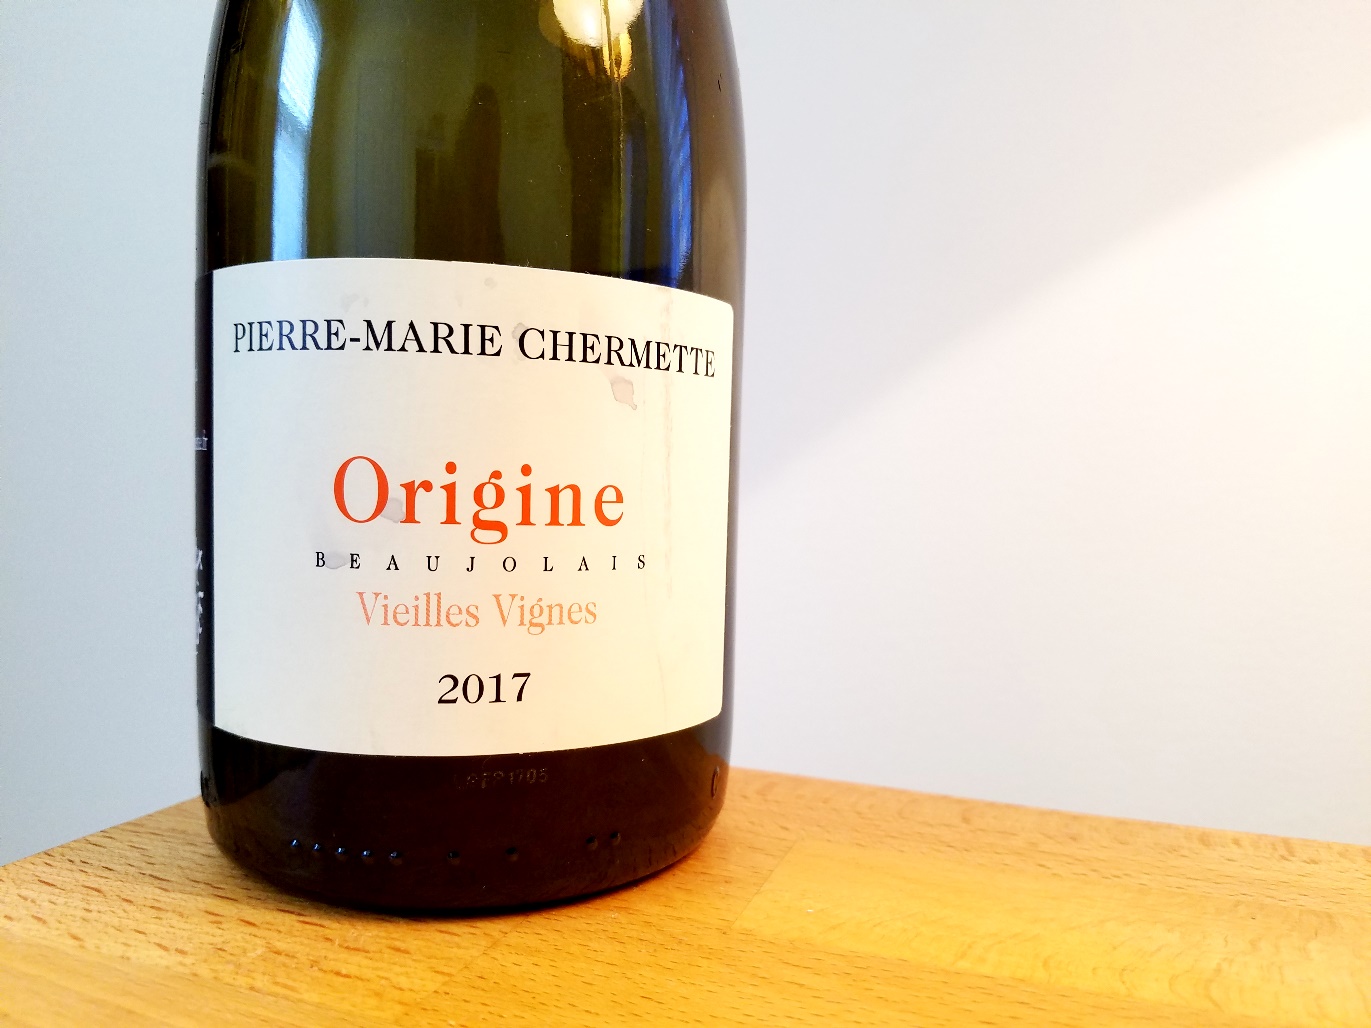 Pierre-Marie Chermette, Domaine du Vissoux Origine Vieilles Vignes Beaujolais 2017, Burgundy, France, Wine Casual